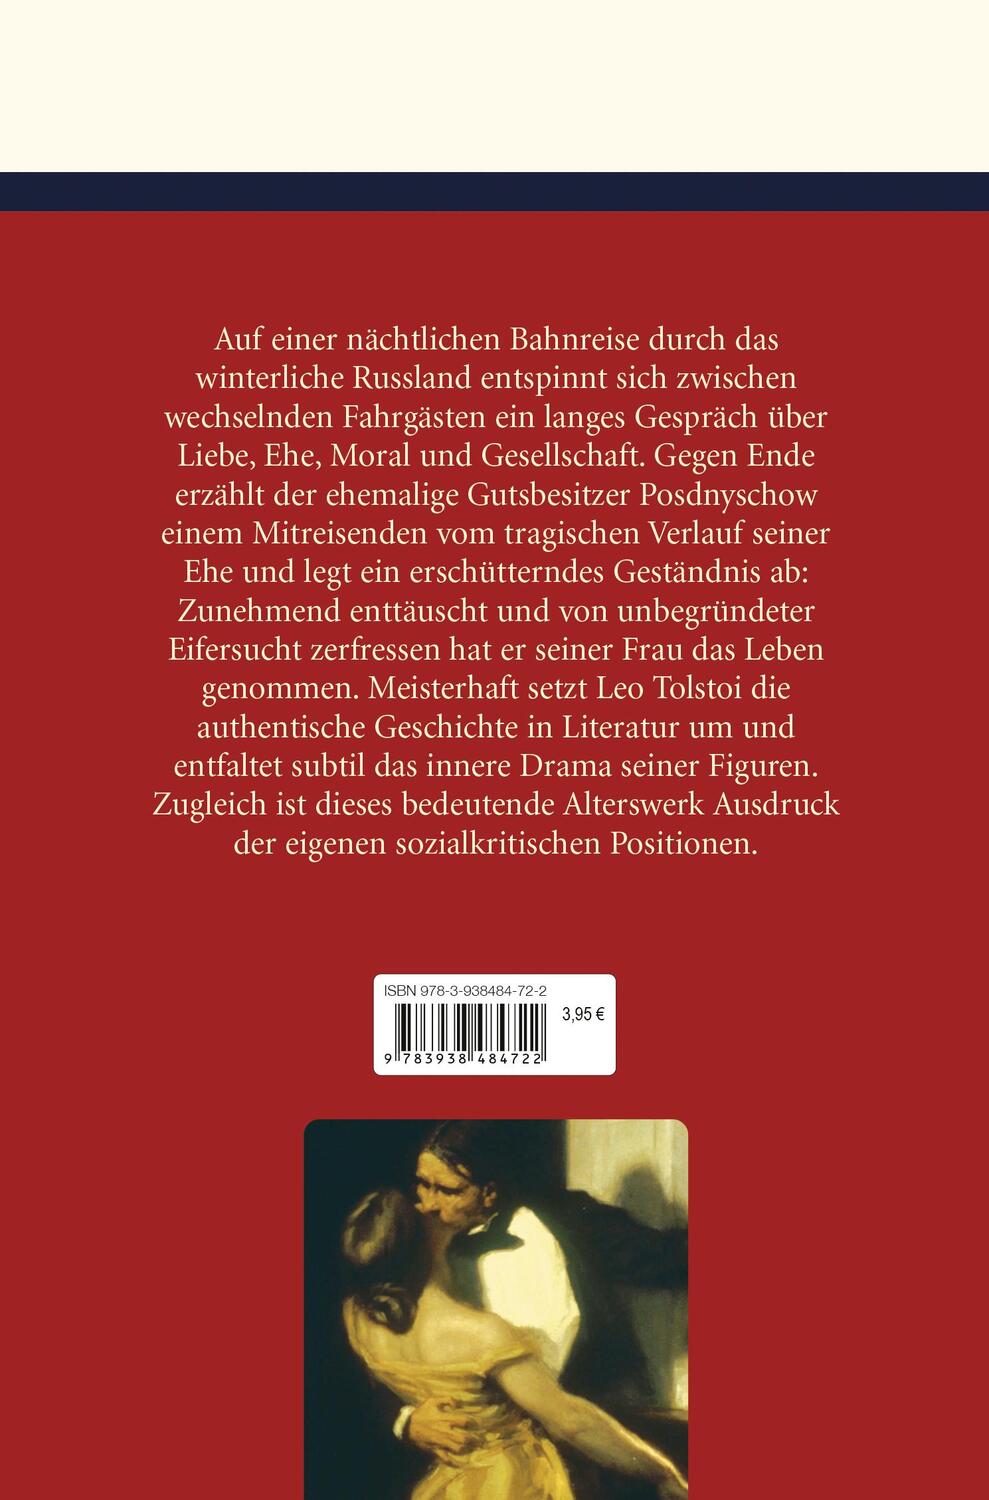 Bild: 9783938484722 | Die Kreutzersonate | Leo N. Tolstoi | Buch | 144 S. | Deutsch | 2006